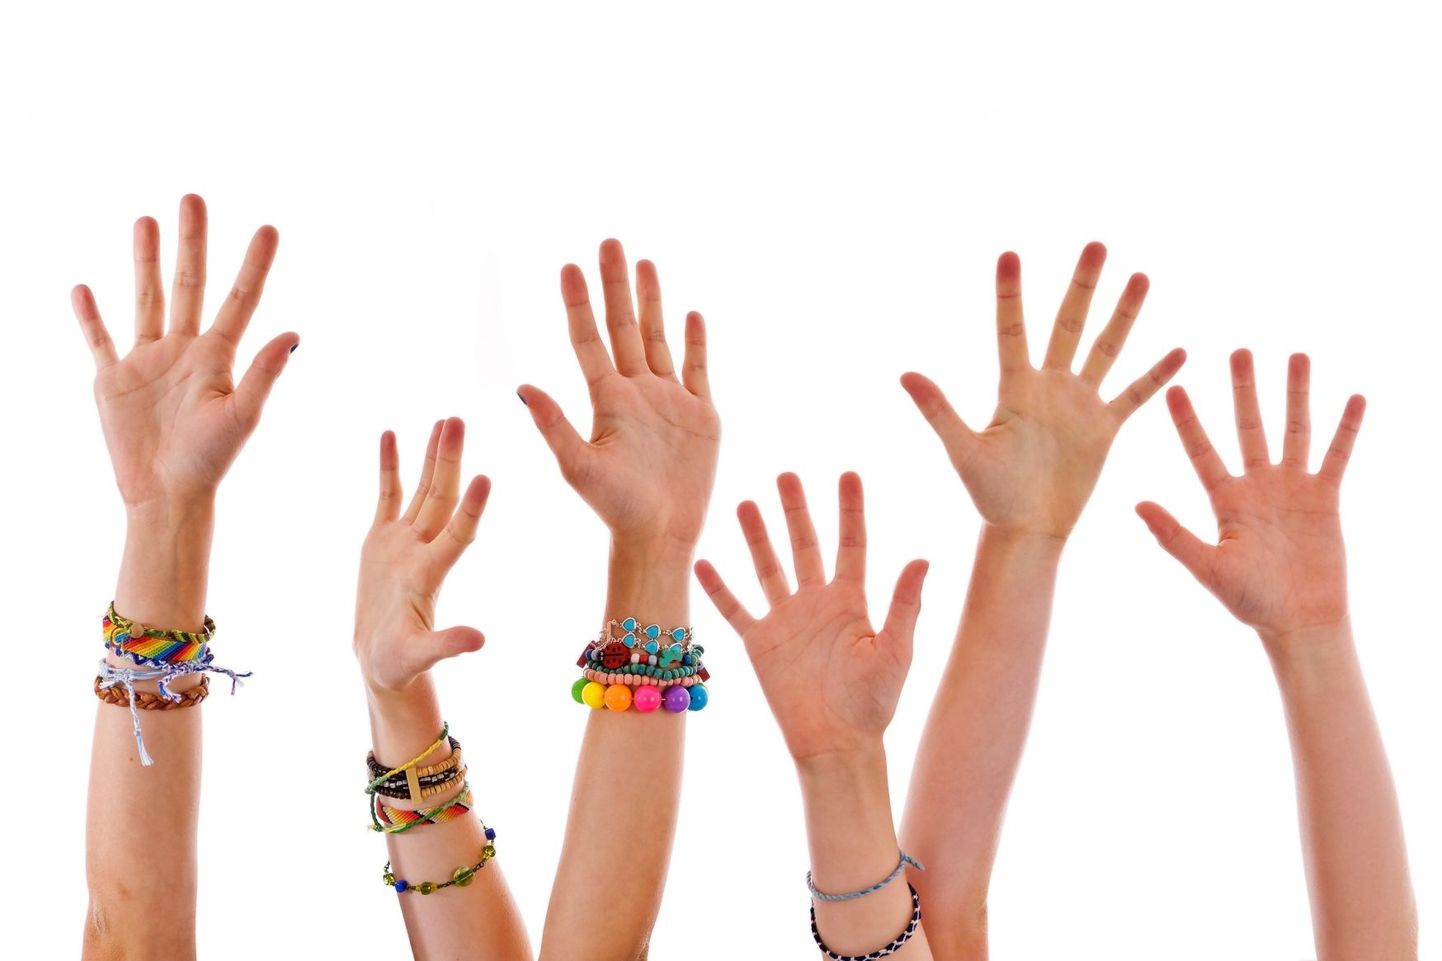 Uuringu järgi pole nn ravivatest käevõrudest rohkem kasu kui teistest kenadest käeehetest.